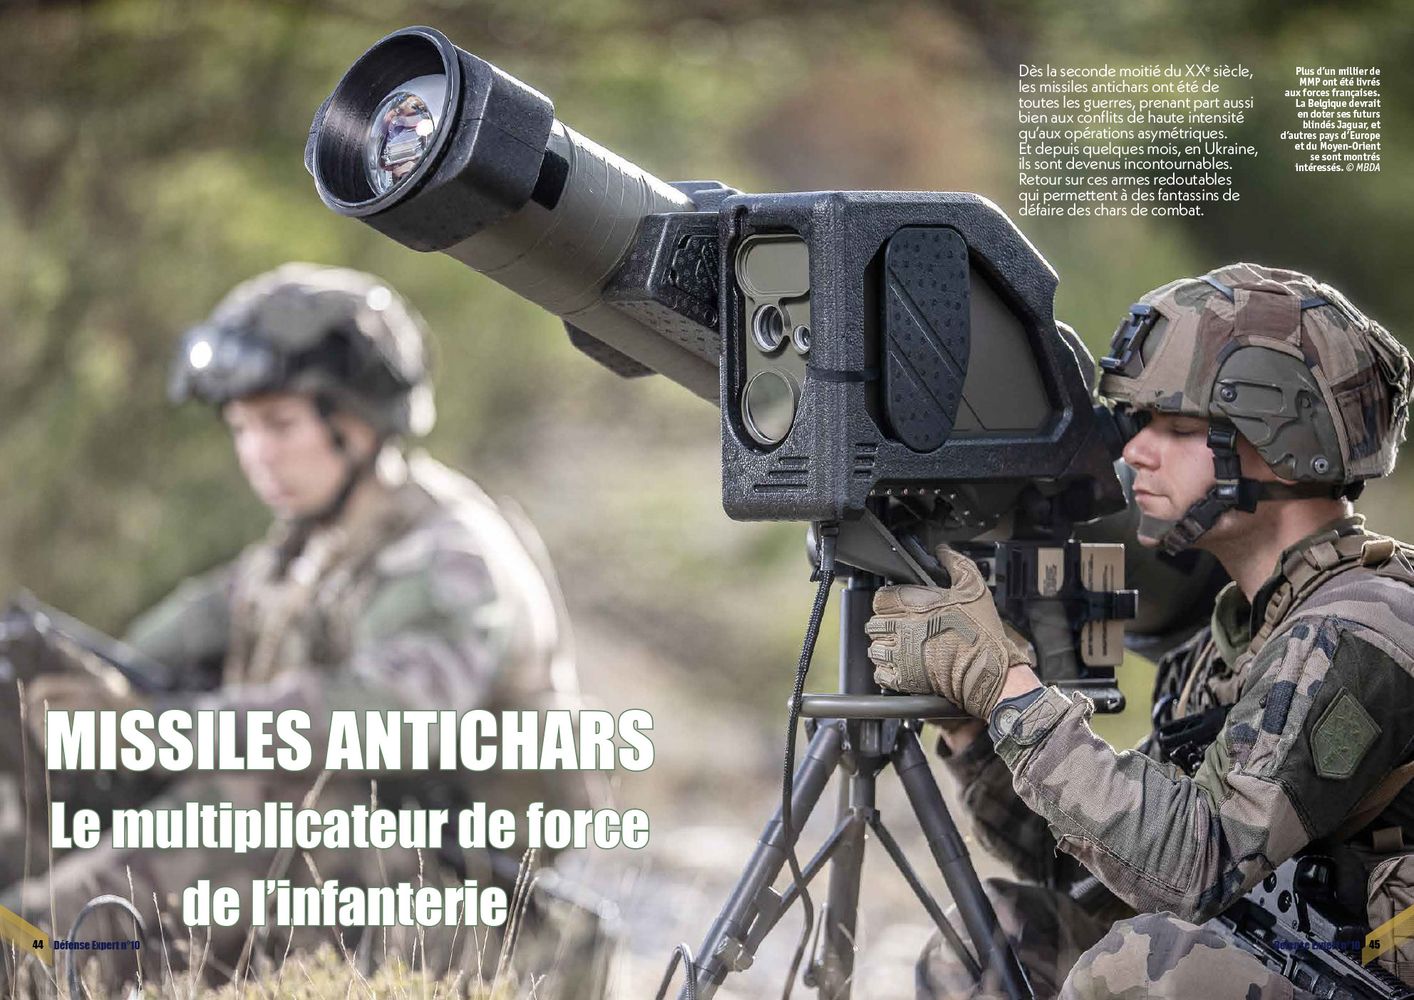 Missiles antichars, le multiplicateur de force de l’infanterie - page 44 & 45 DE n°10